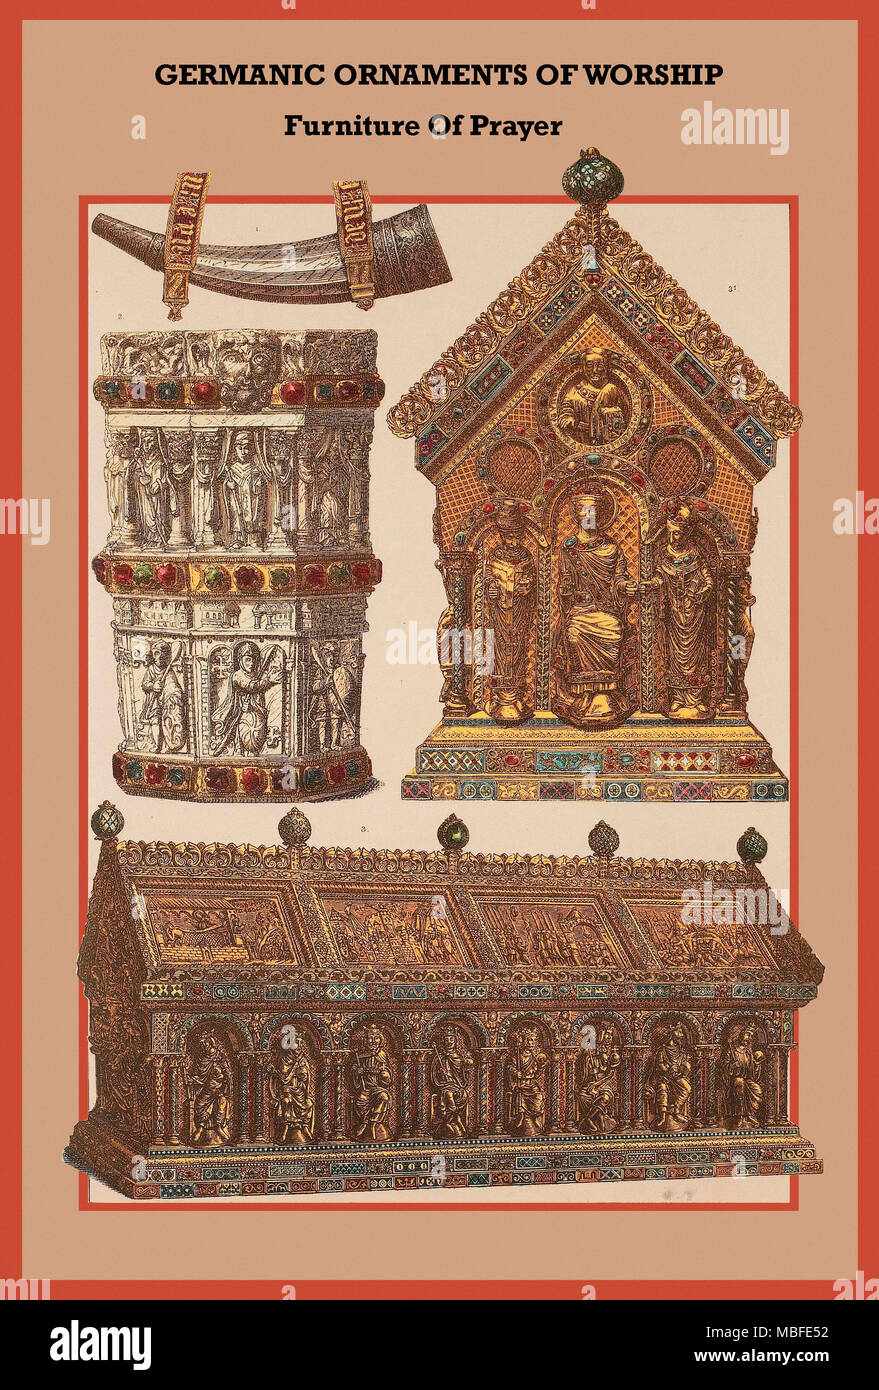 Ornements de meubles culte germanique de la prière Banque D'Images